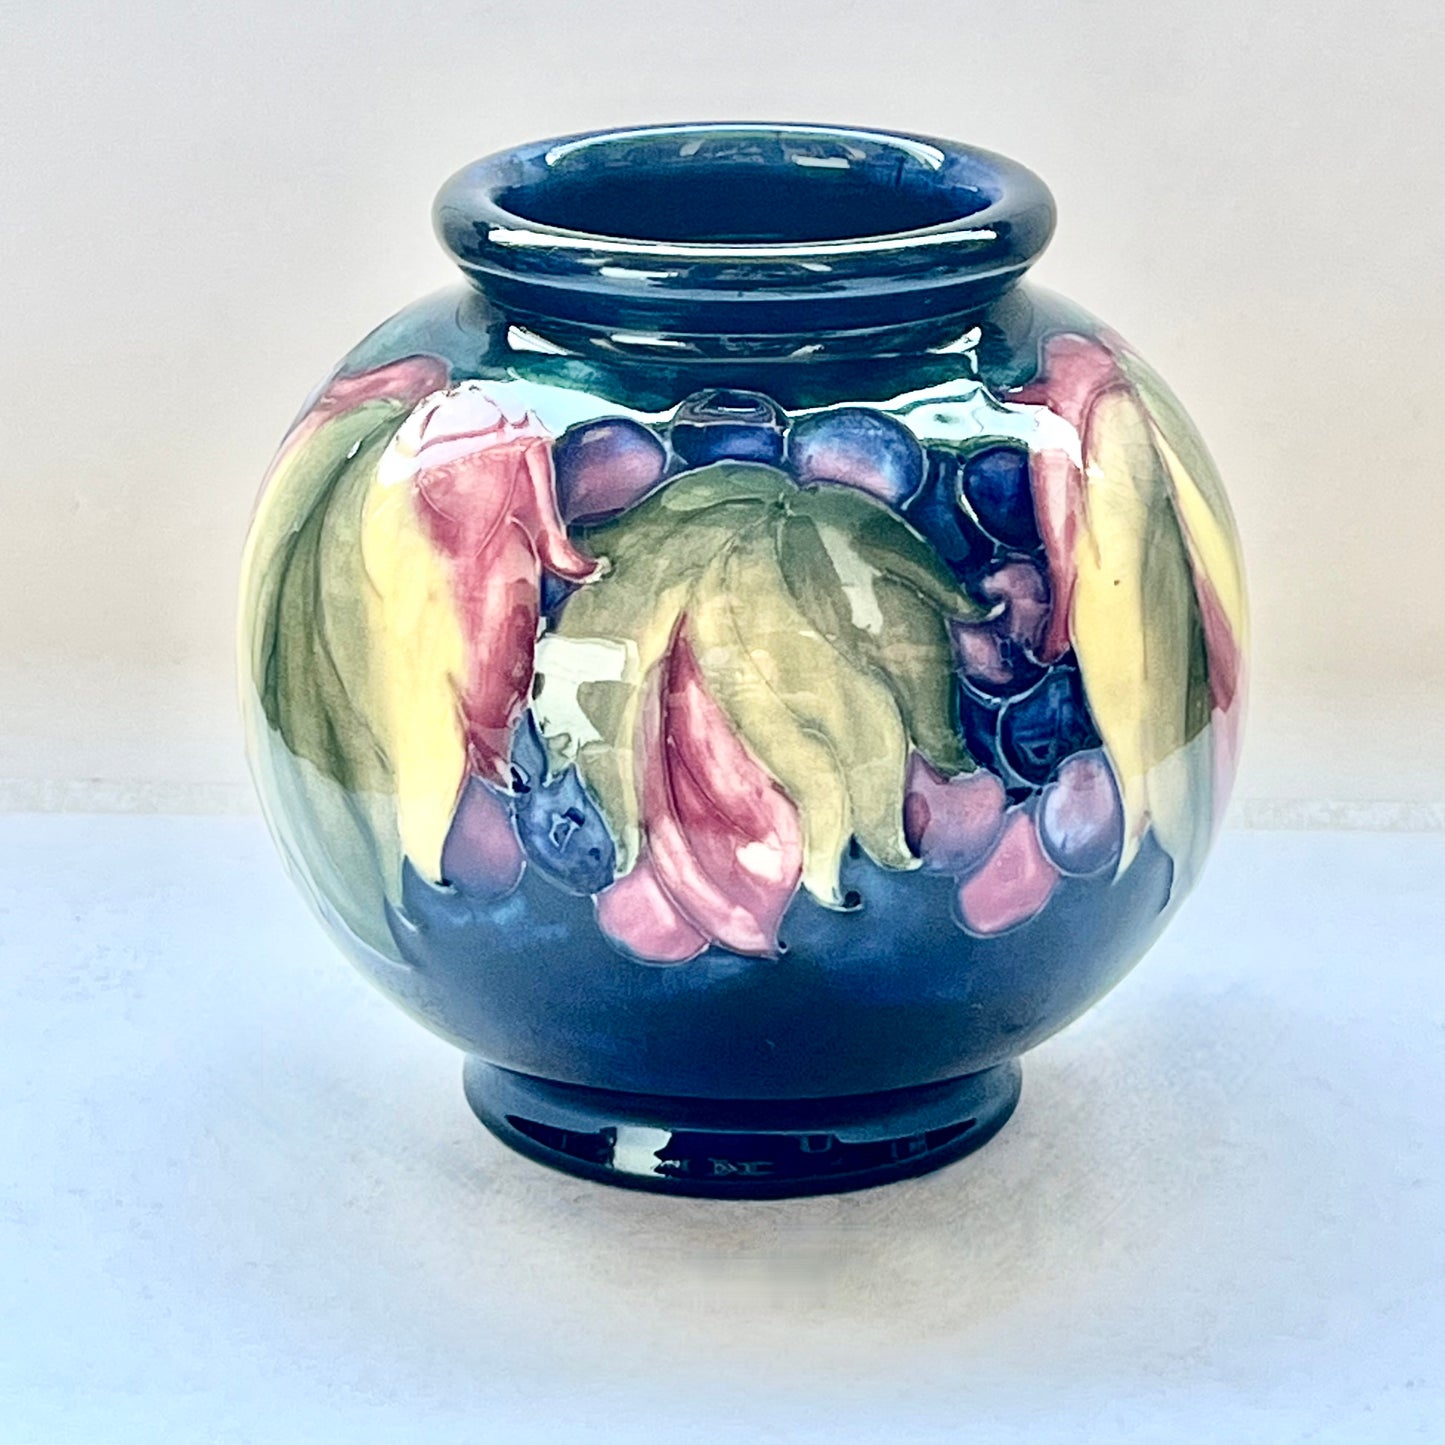 复古近古董 20 世纪早期 William Moorcroft 叶子和浆果花瓶 约 1928-1949 年